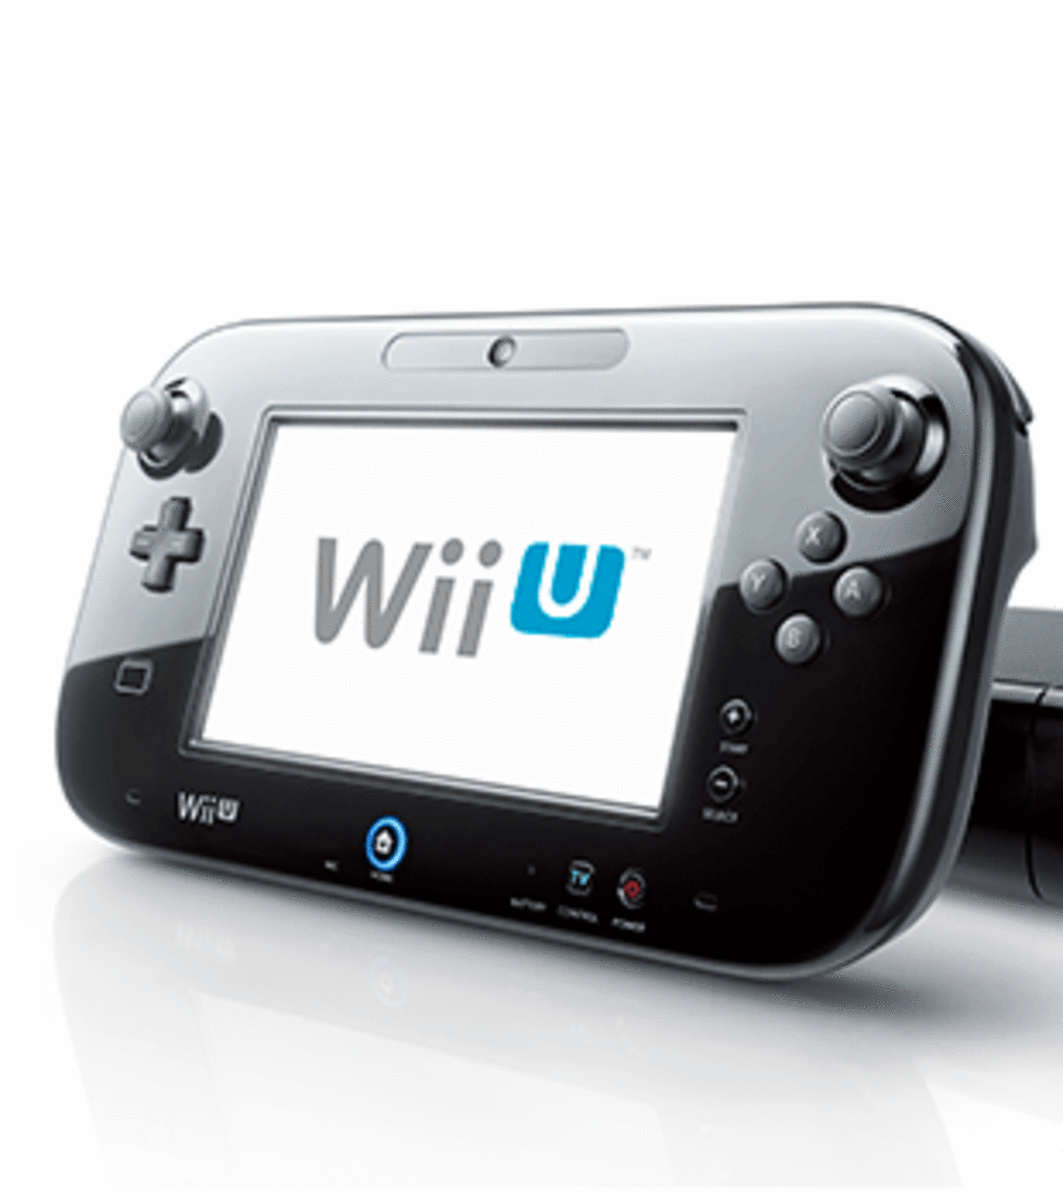 Review Nintendo Wii U